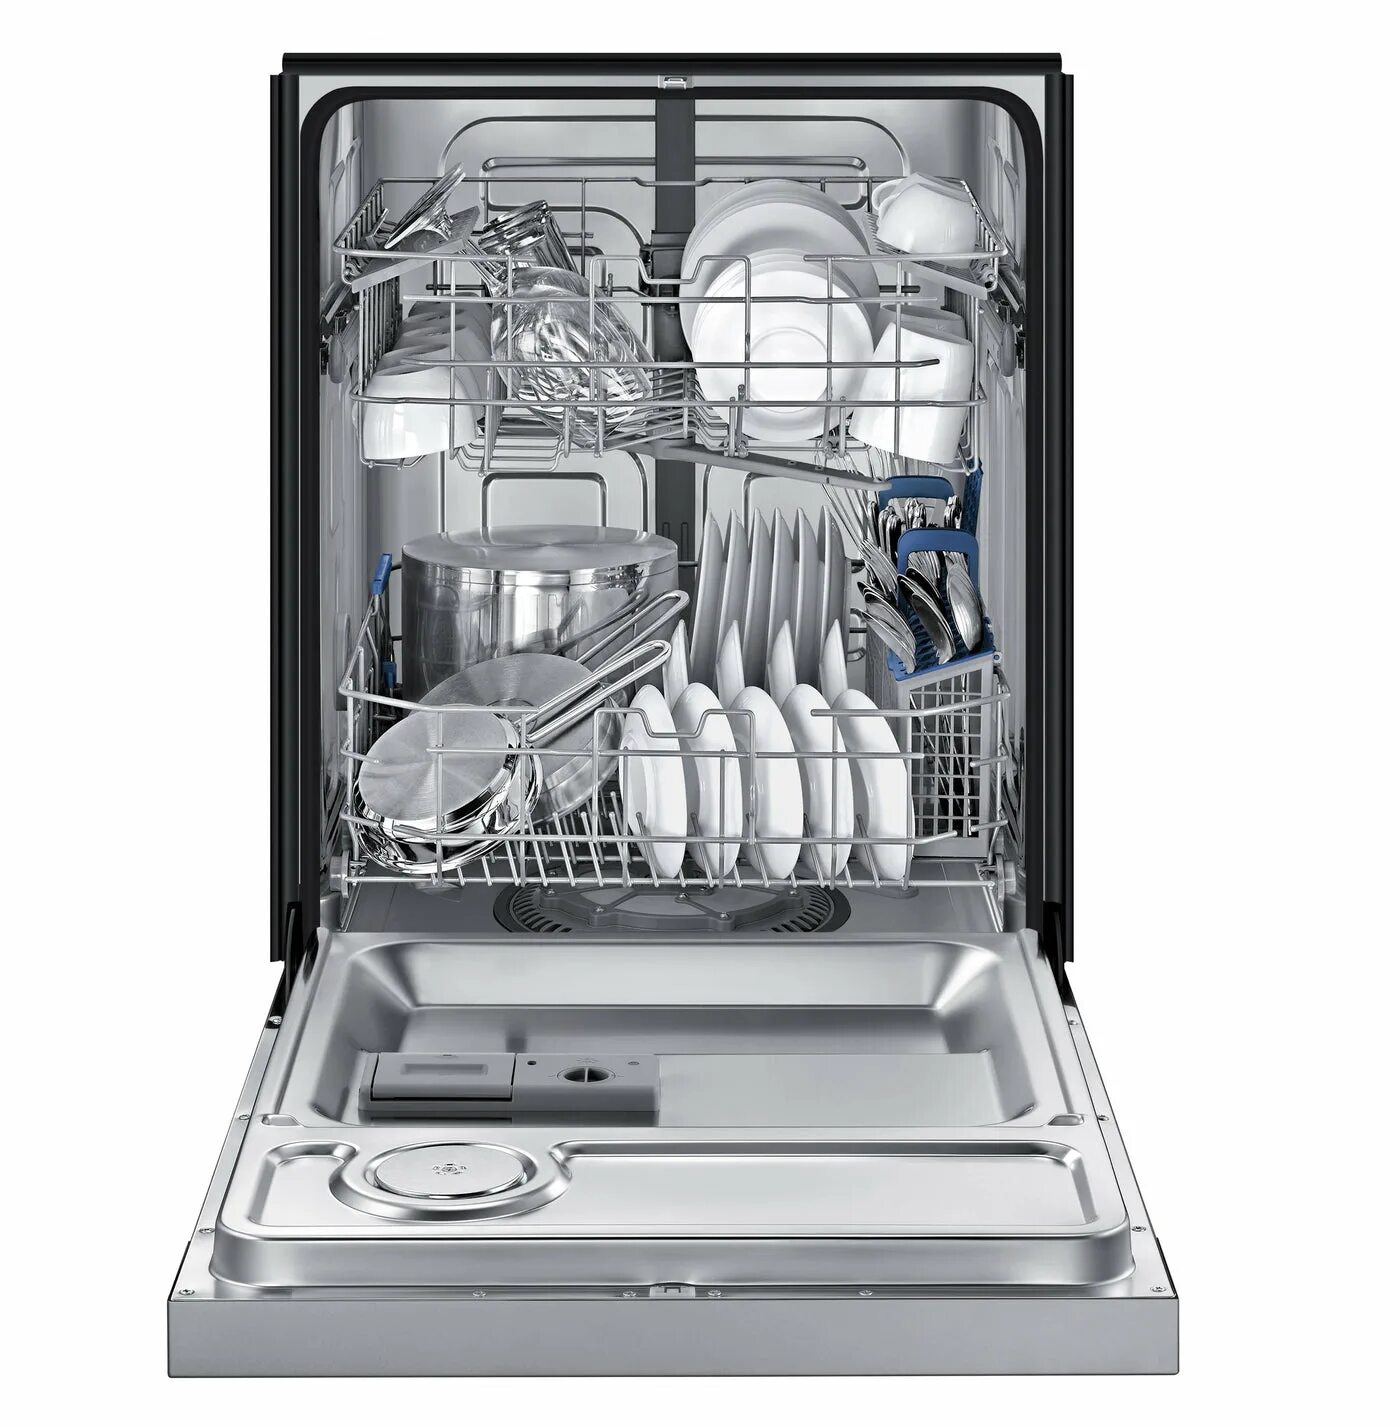 Посудомоечная машина Samsung dw50r4040bb. Посудомоечная машина Samsung dw50r4050fs. Посудомоечная машина Platinum dw139e. Посудомоечная машина Avalon-dw32t инокс. Посудомоечные машины 3 комплекта